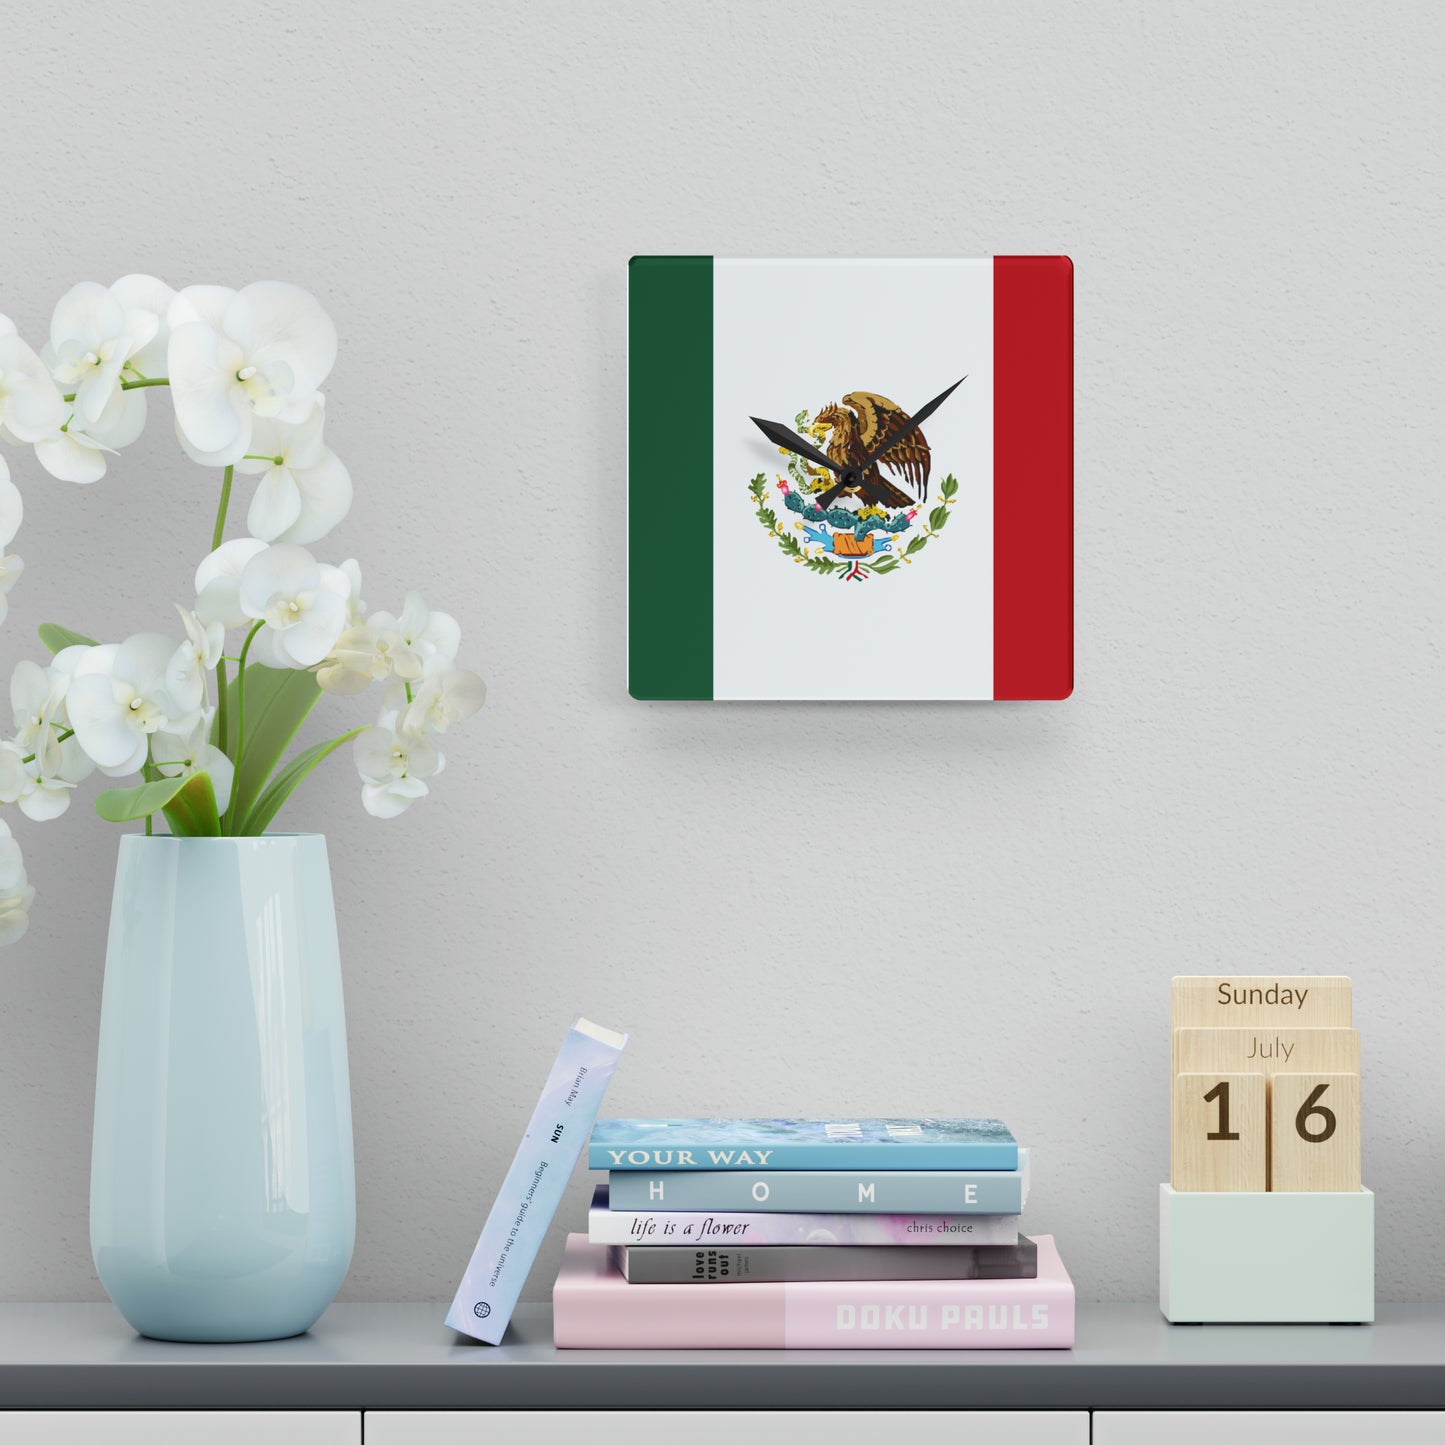 Mexico Acrylic Wall Clock